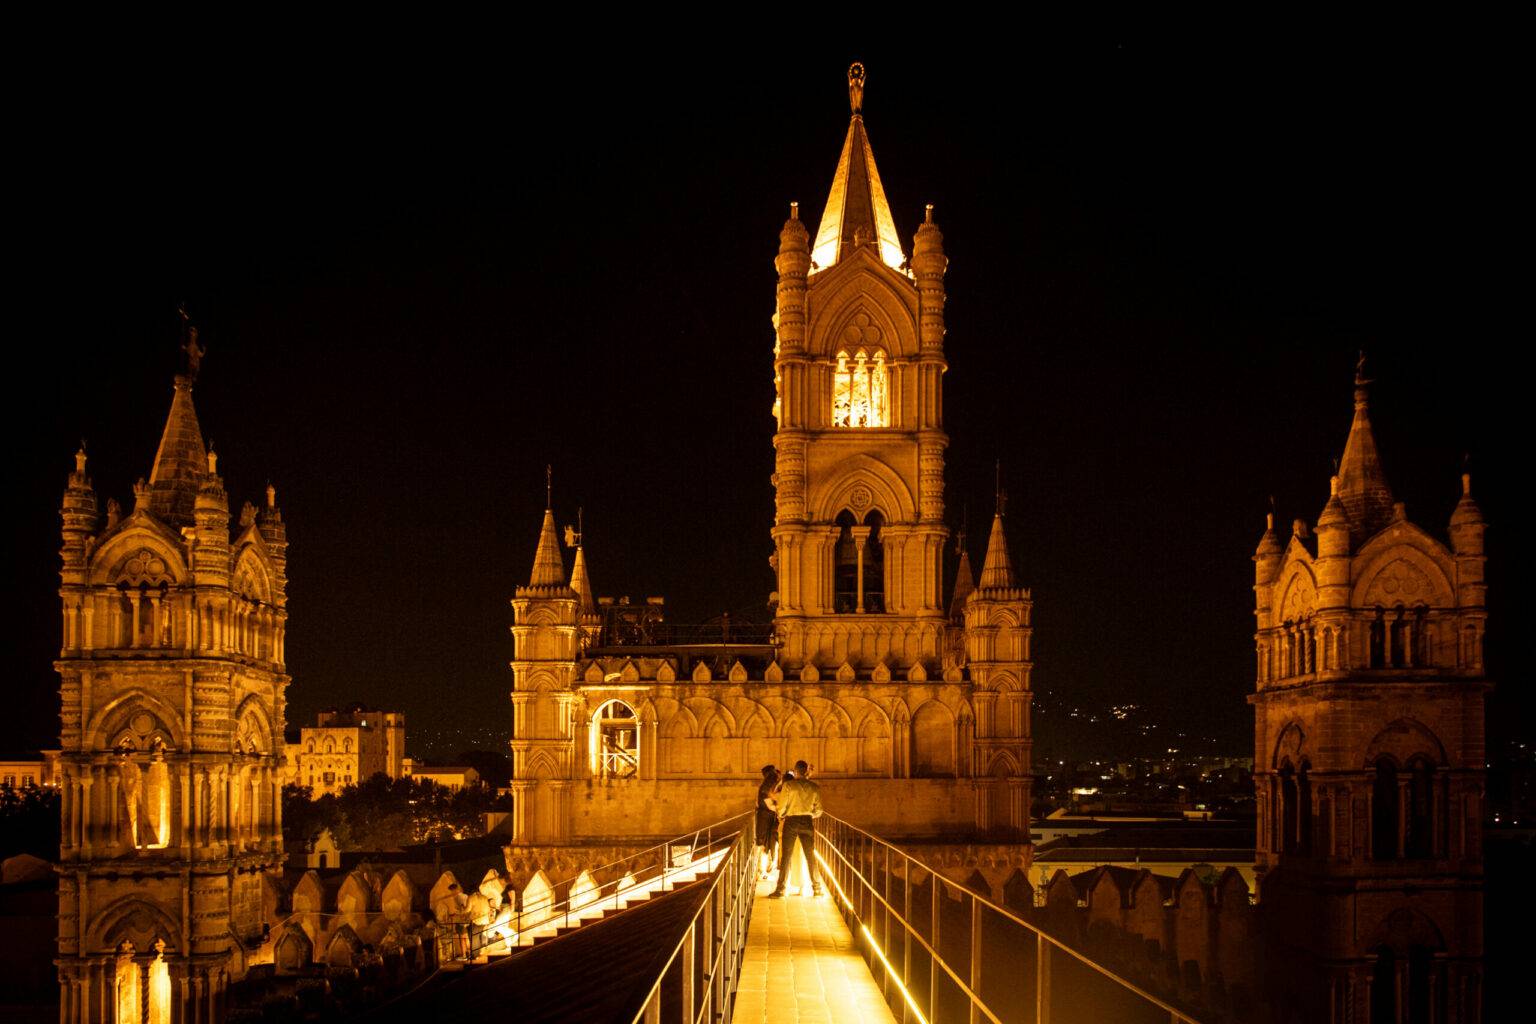 Nachts auf dem Dach der Kathedrale herumzuspazieren ist ein Erlebnis. 